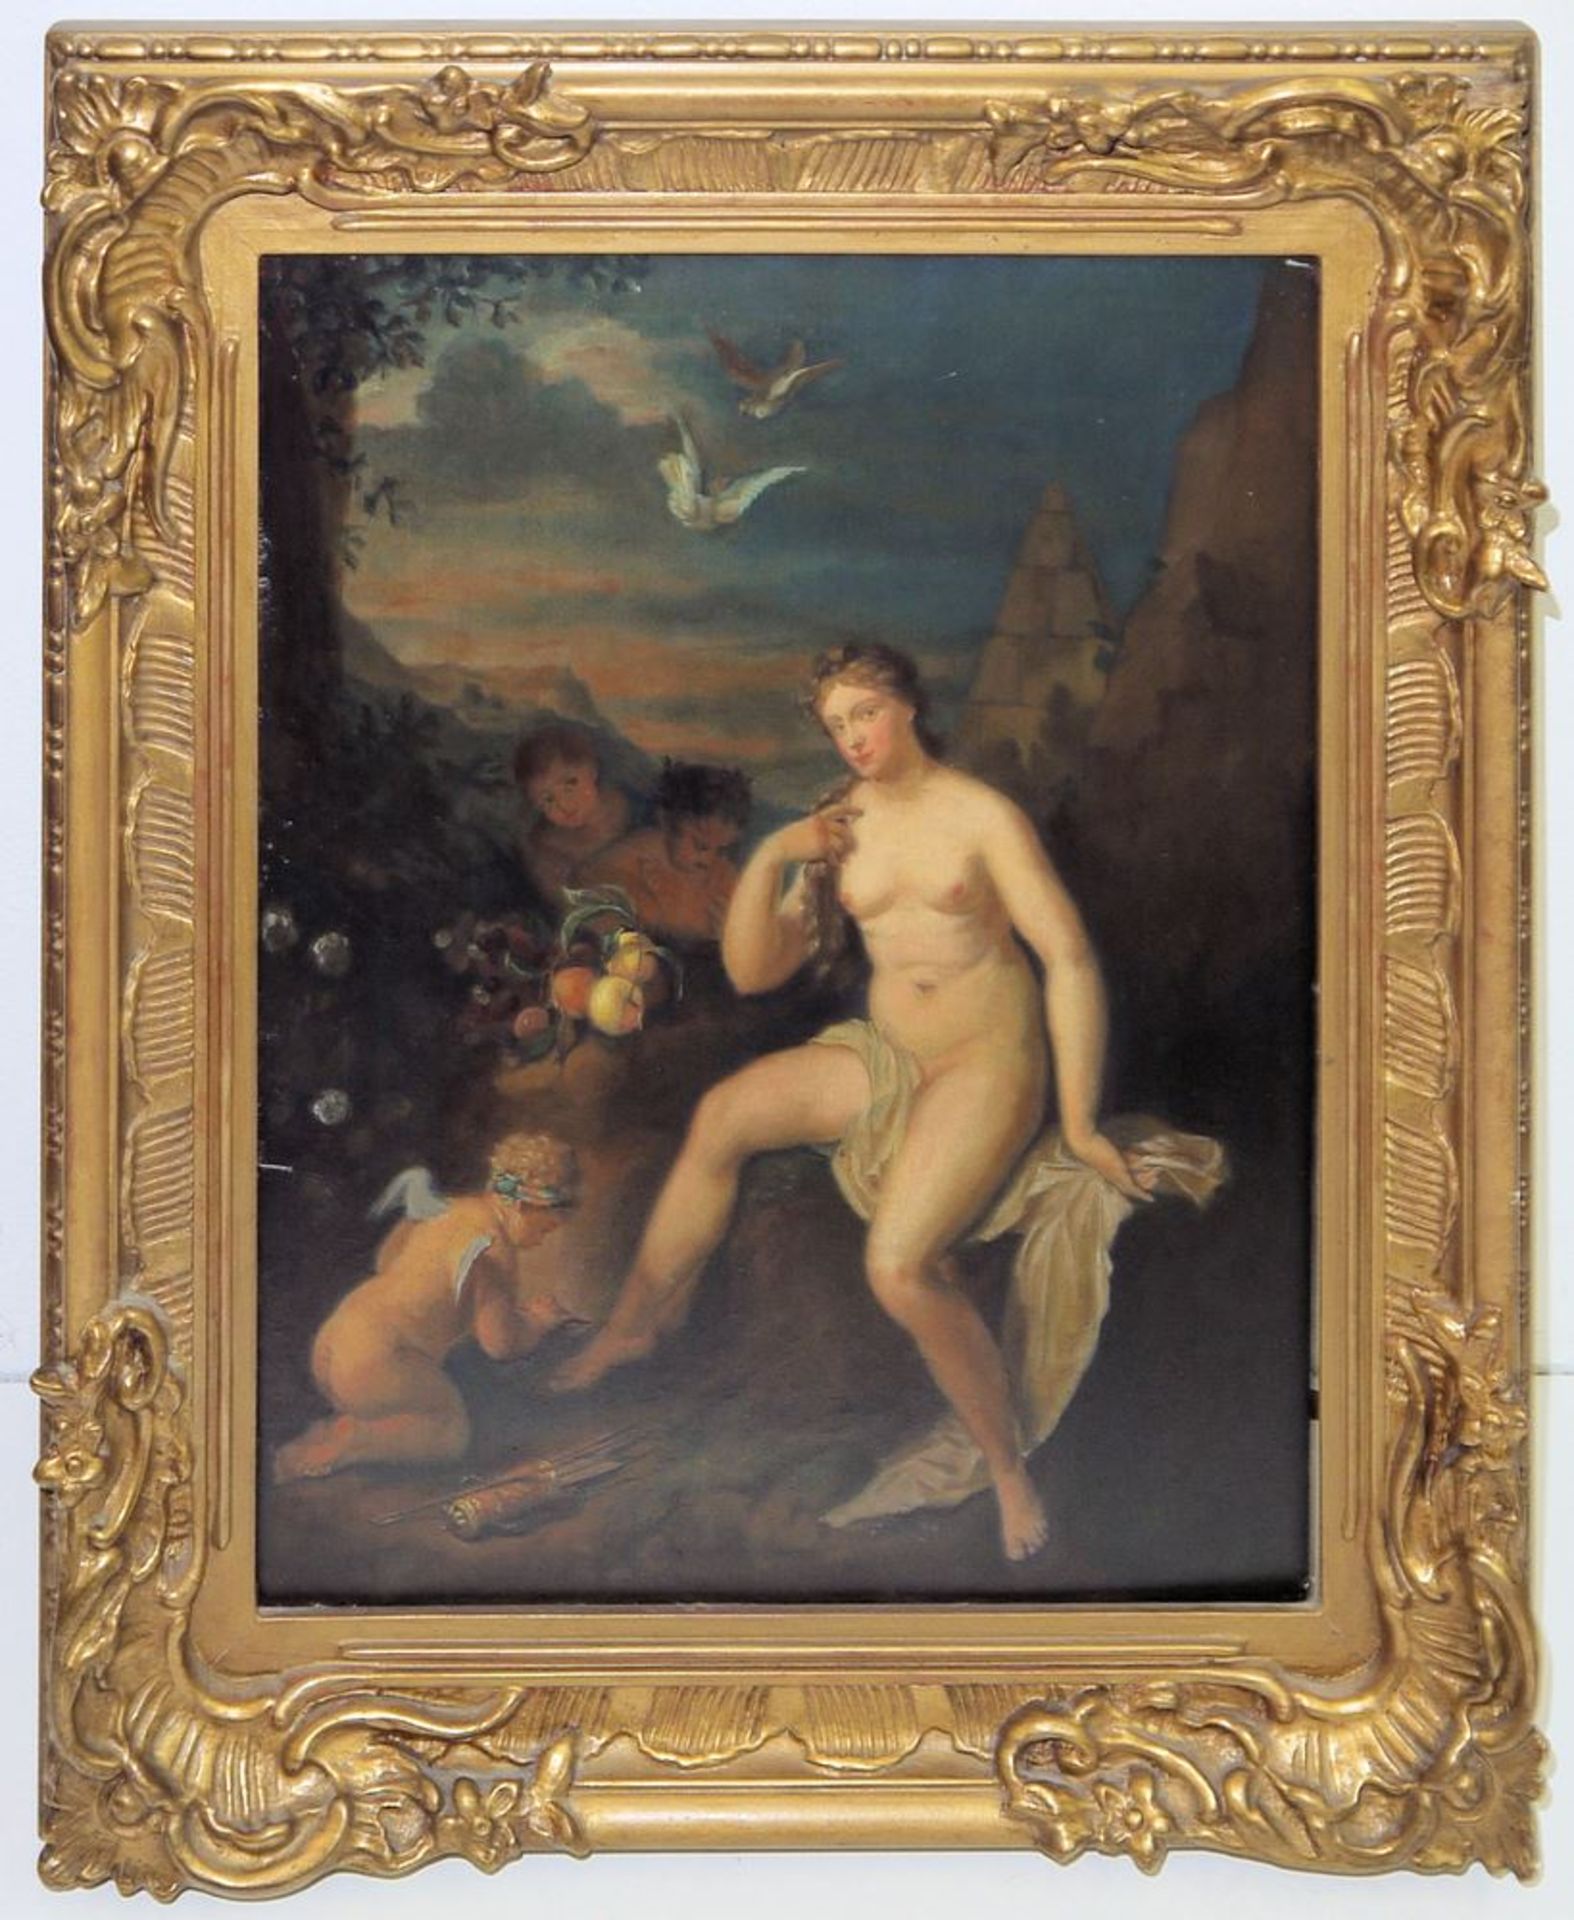 Adriaen van der Werff, meisterliche Kopie nach, Venus und Amor, Ölgemälde, 19. Jh., in altem